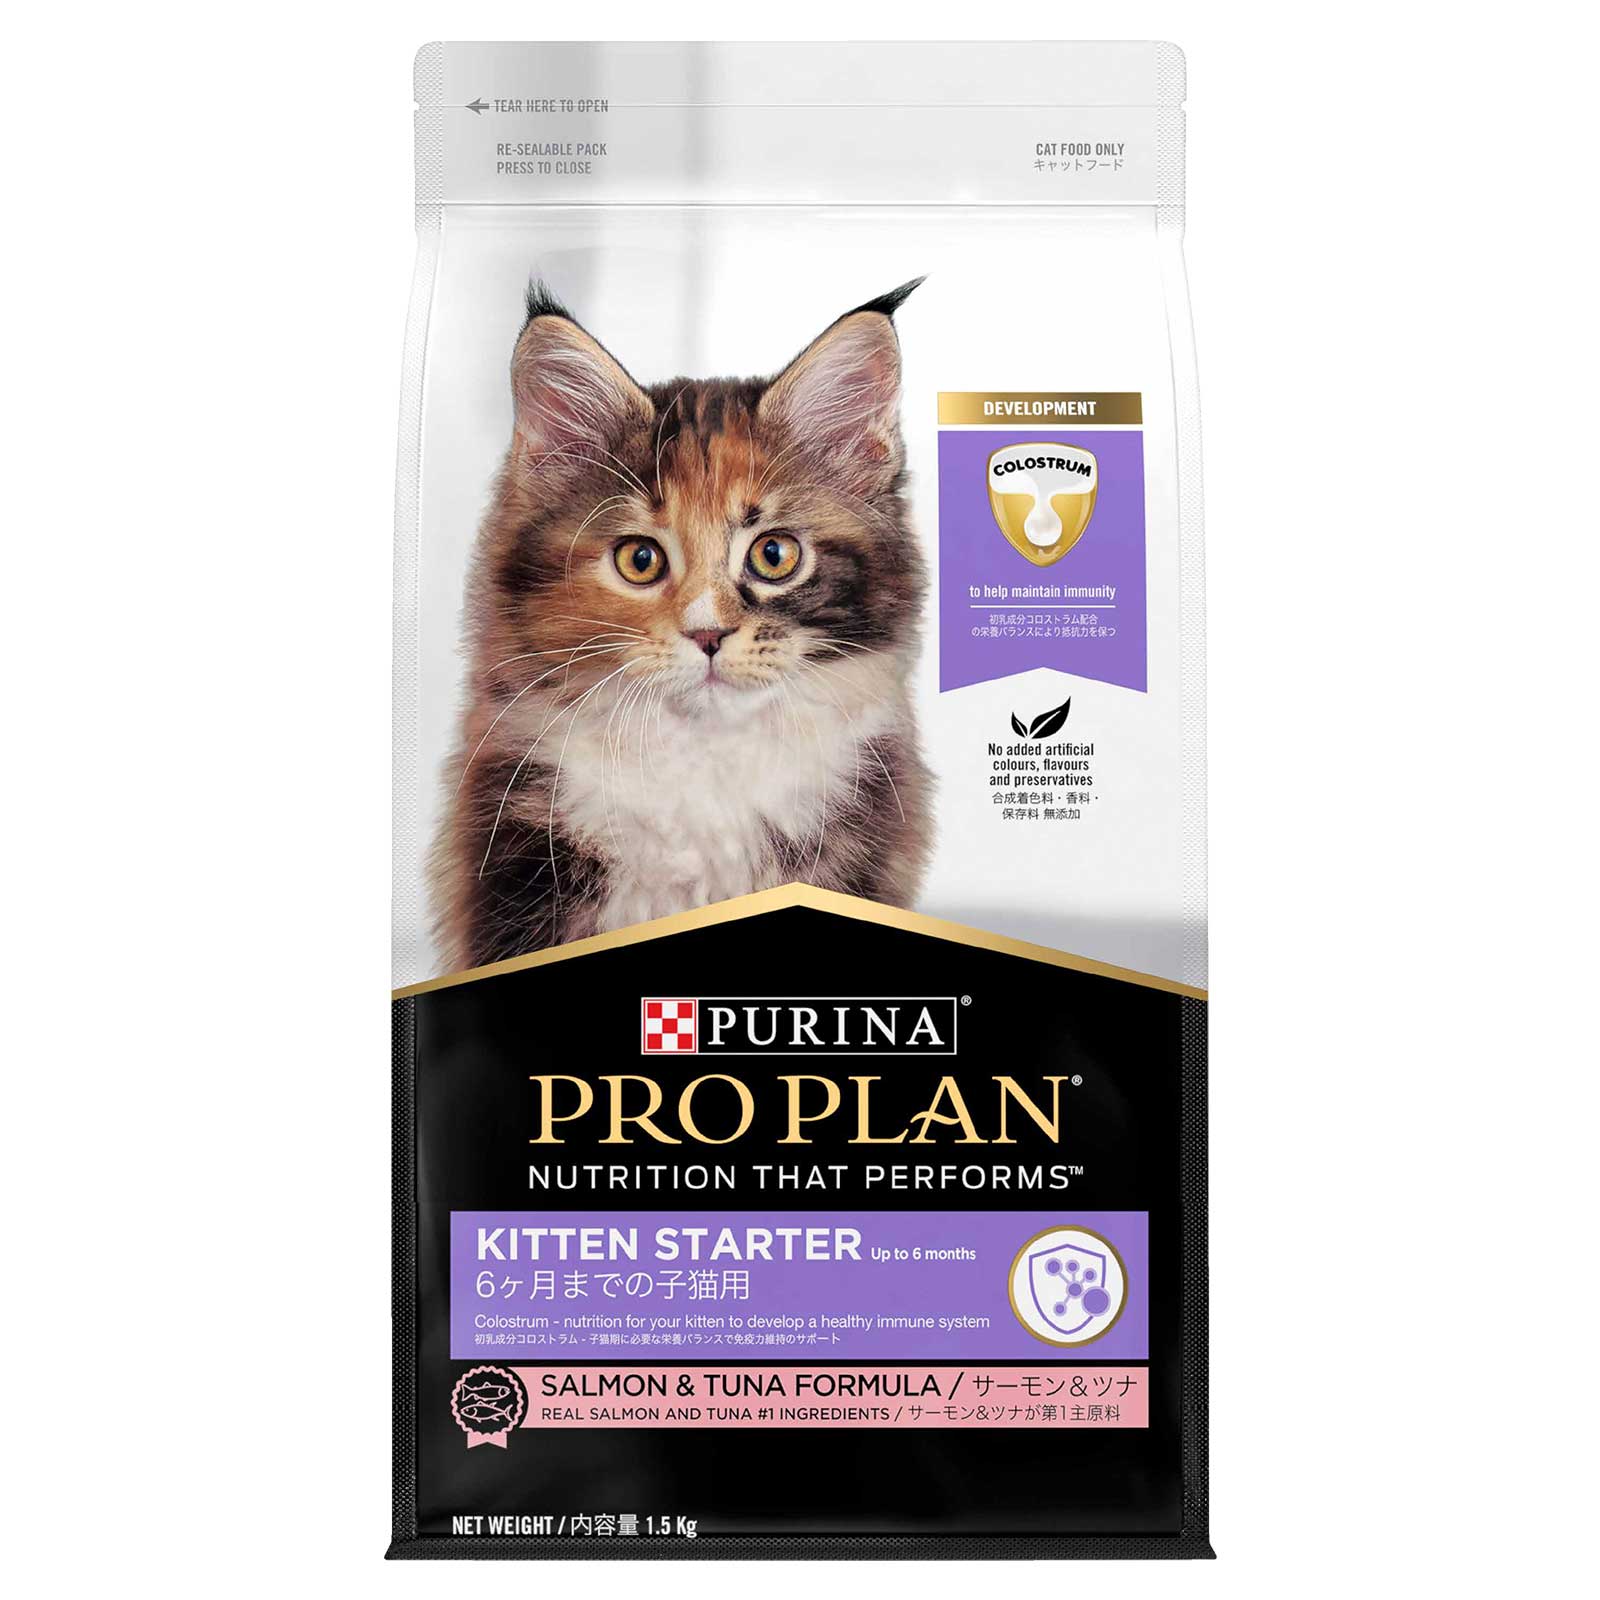 Pro Plan Cat Food Kitten Starter Salmon & Tuna